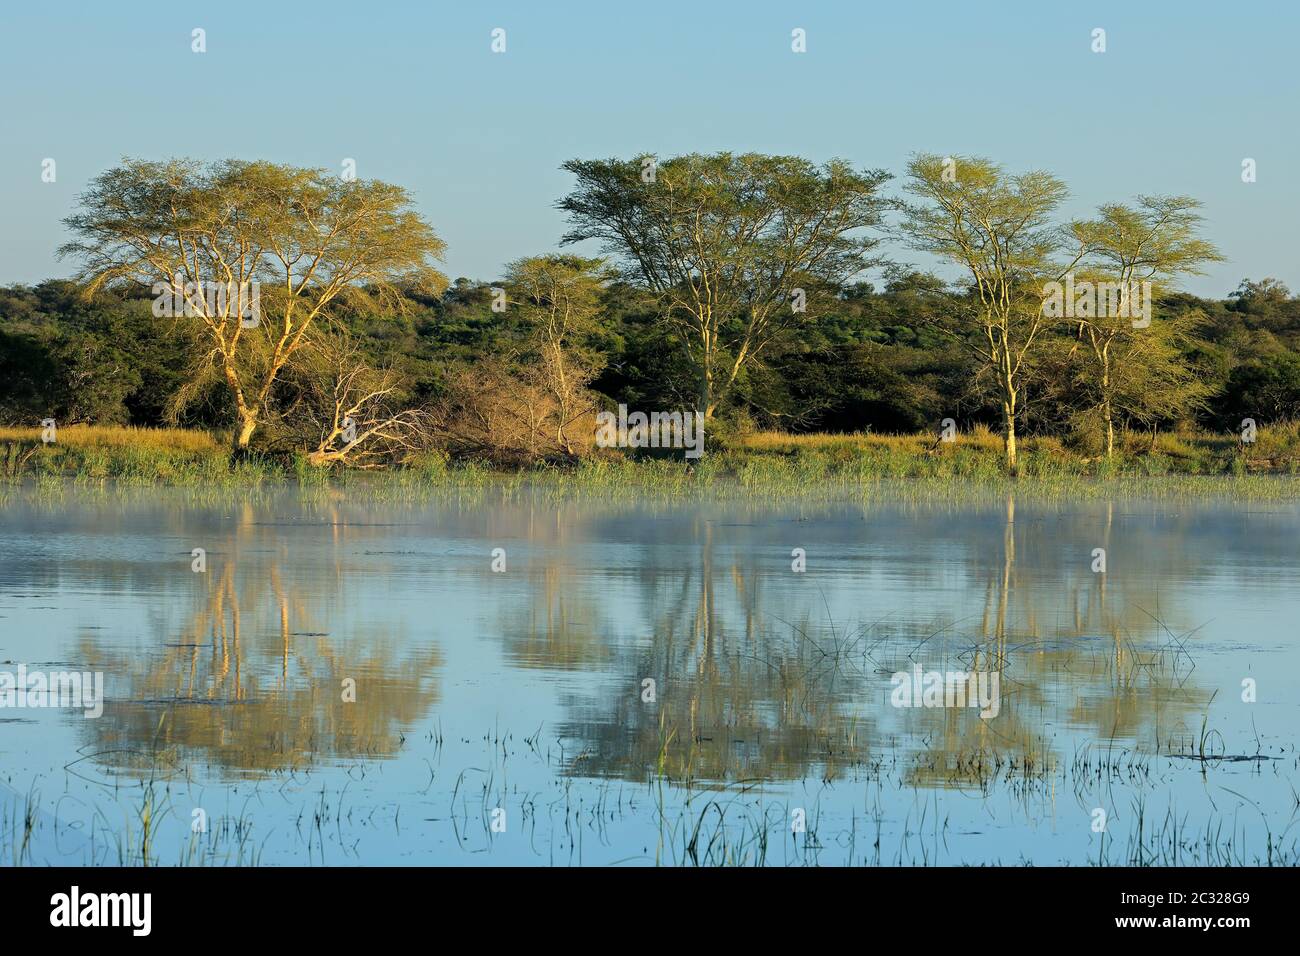 La fièvre distinctif des arbres (Vachellia xanthoploea) croissant sur le bord d'un lac, Mkuze game reserve, Afrique du Sud Banque D'Images